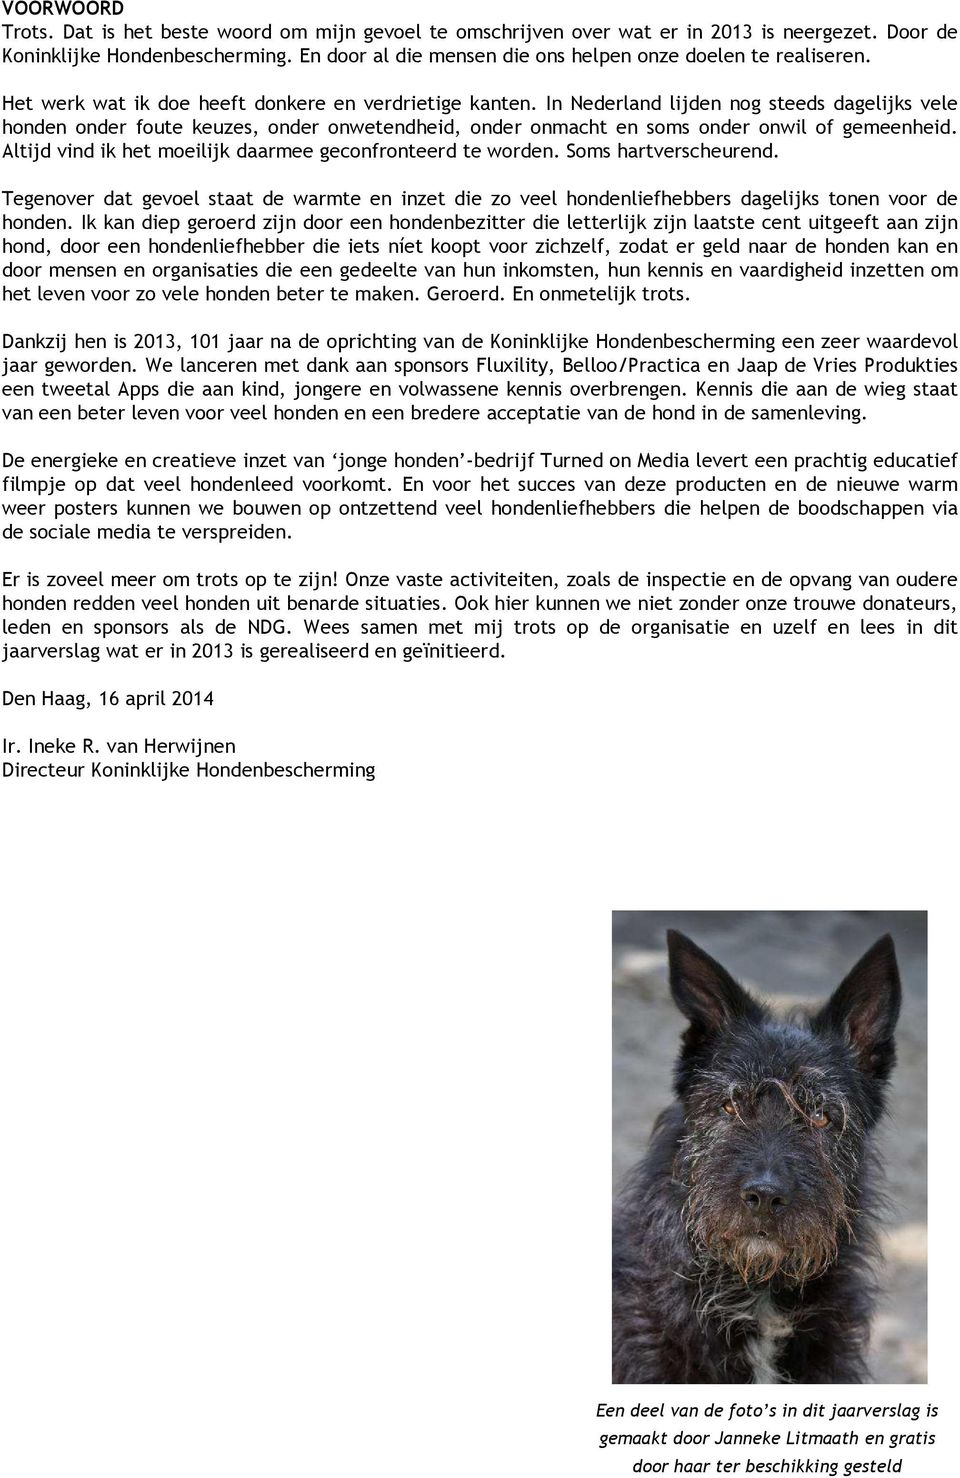 In Nederland lijden nog steeds dagelijks vele honden onder foute keuzes, onder onwetendheid, onder onmacht en soms onder onwil of gemeenheid.